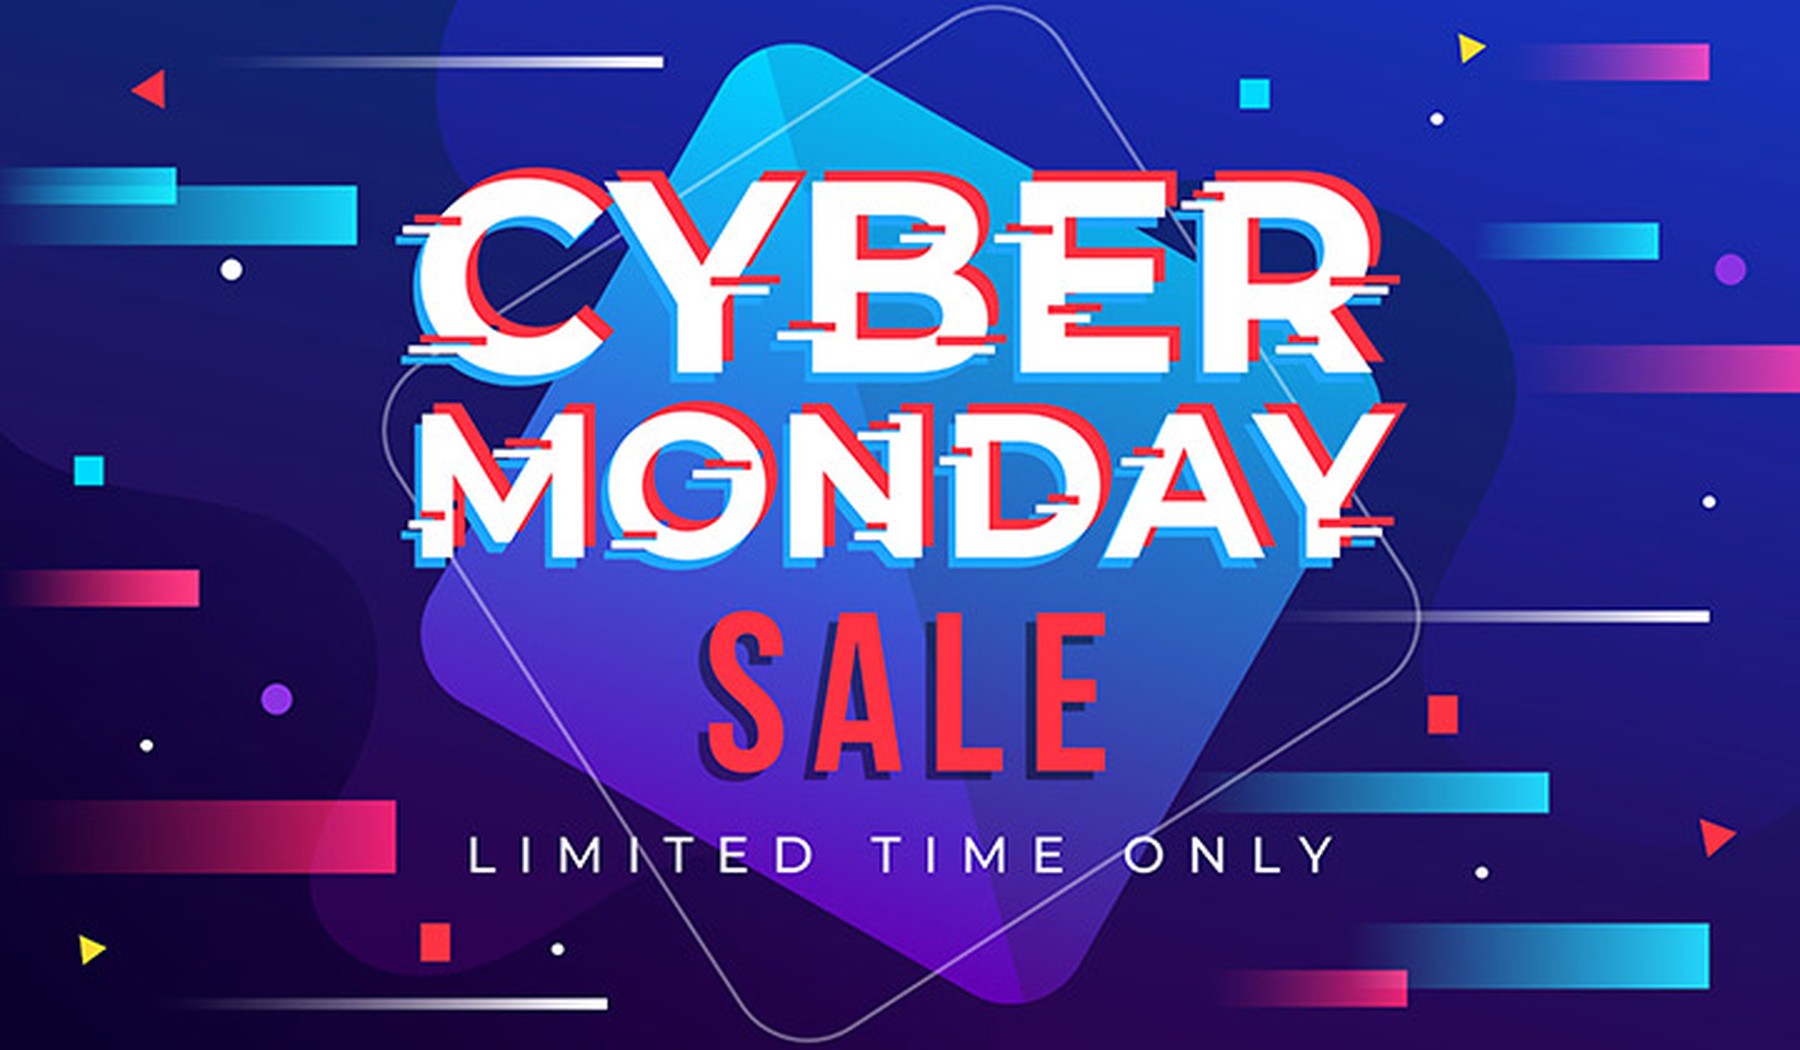 Banner con el fondo azul y efectos en azul y rosa con el texto Cyber Monday Sale Limited Time Only